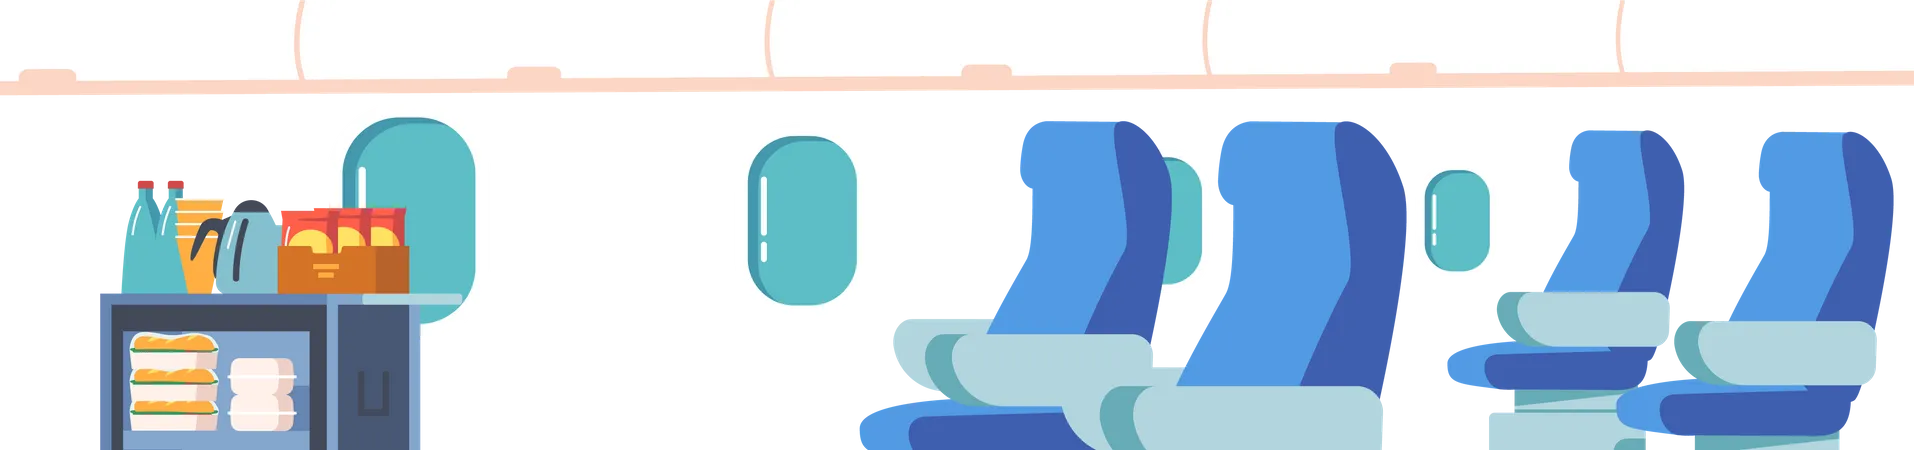 Leeres Flugzeug-Interieur  Illustration